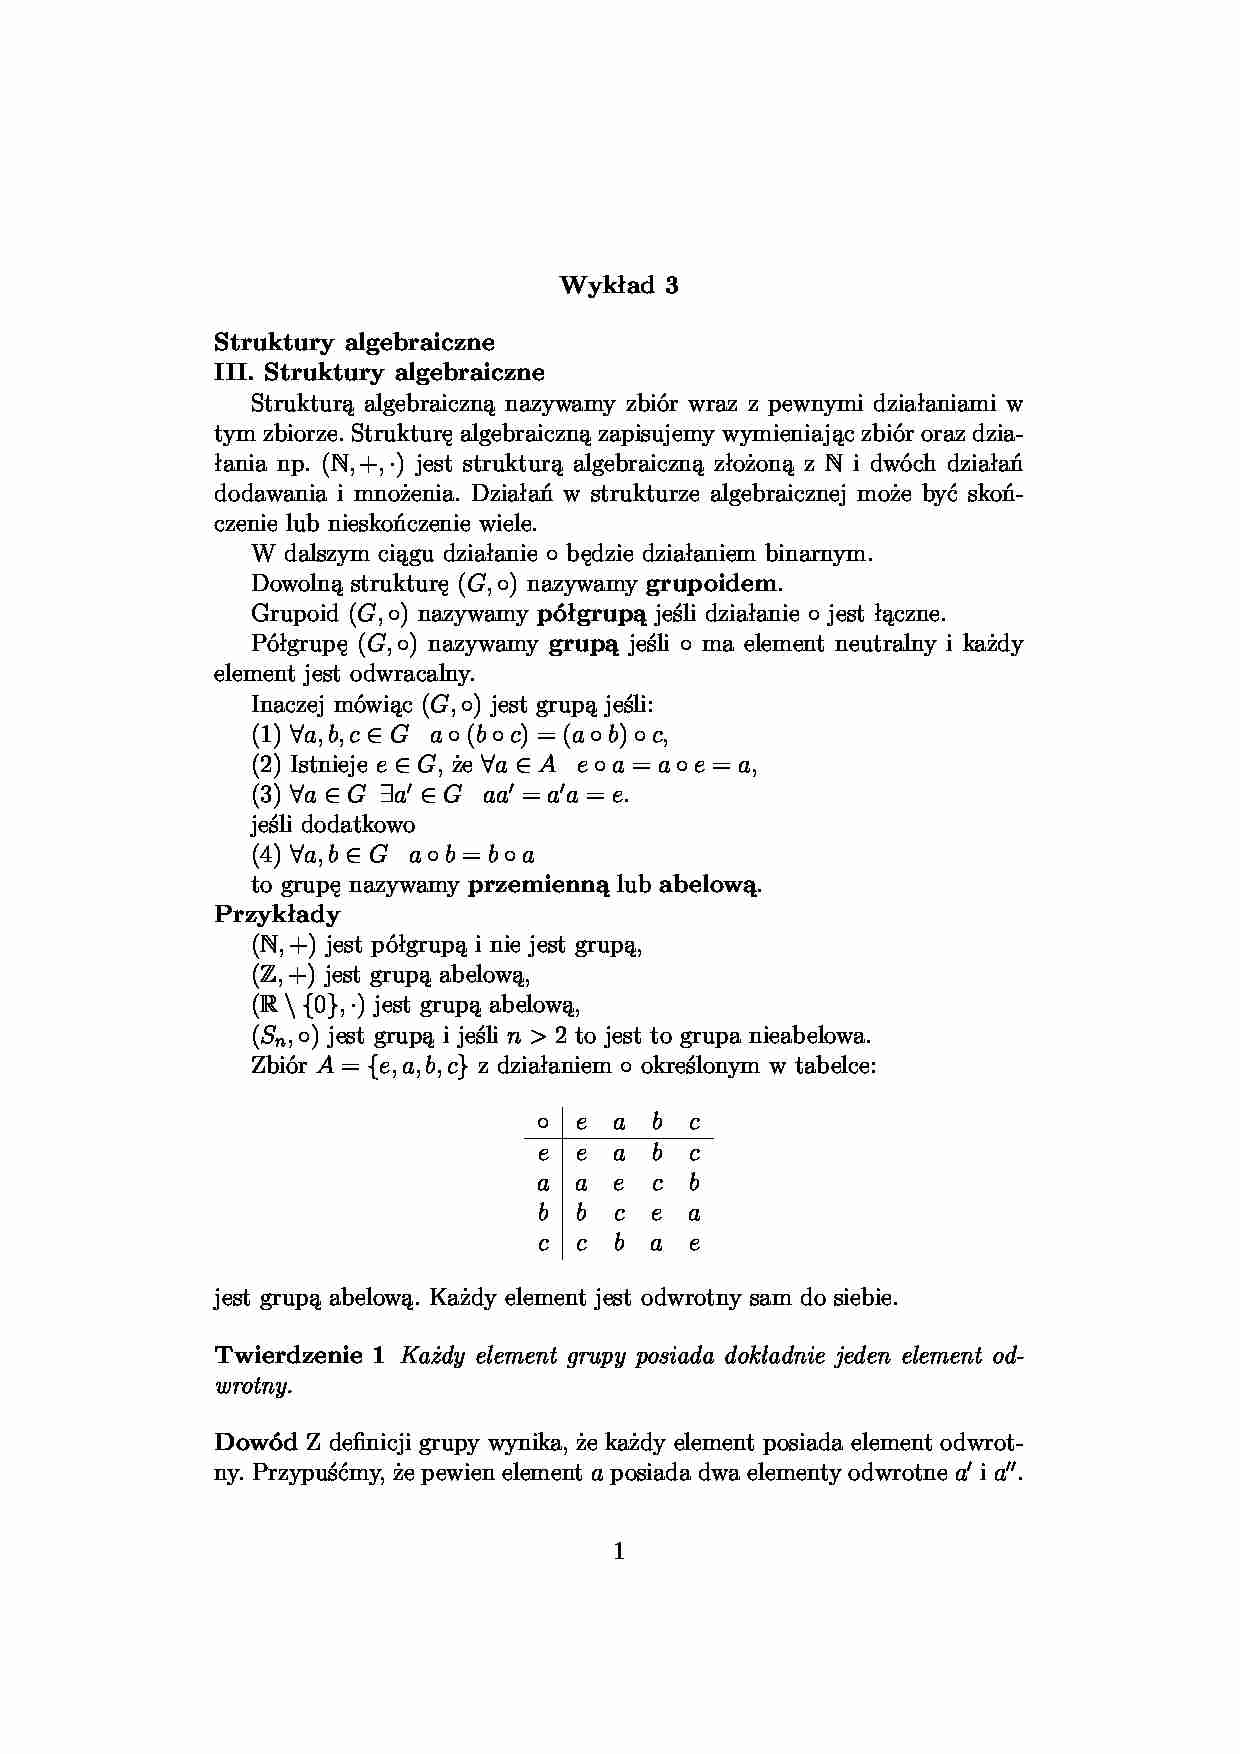 struktury algebraiczne - omówienie - strona 1